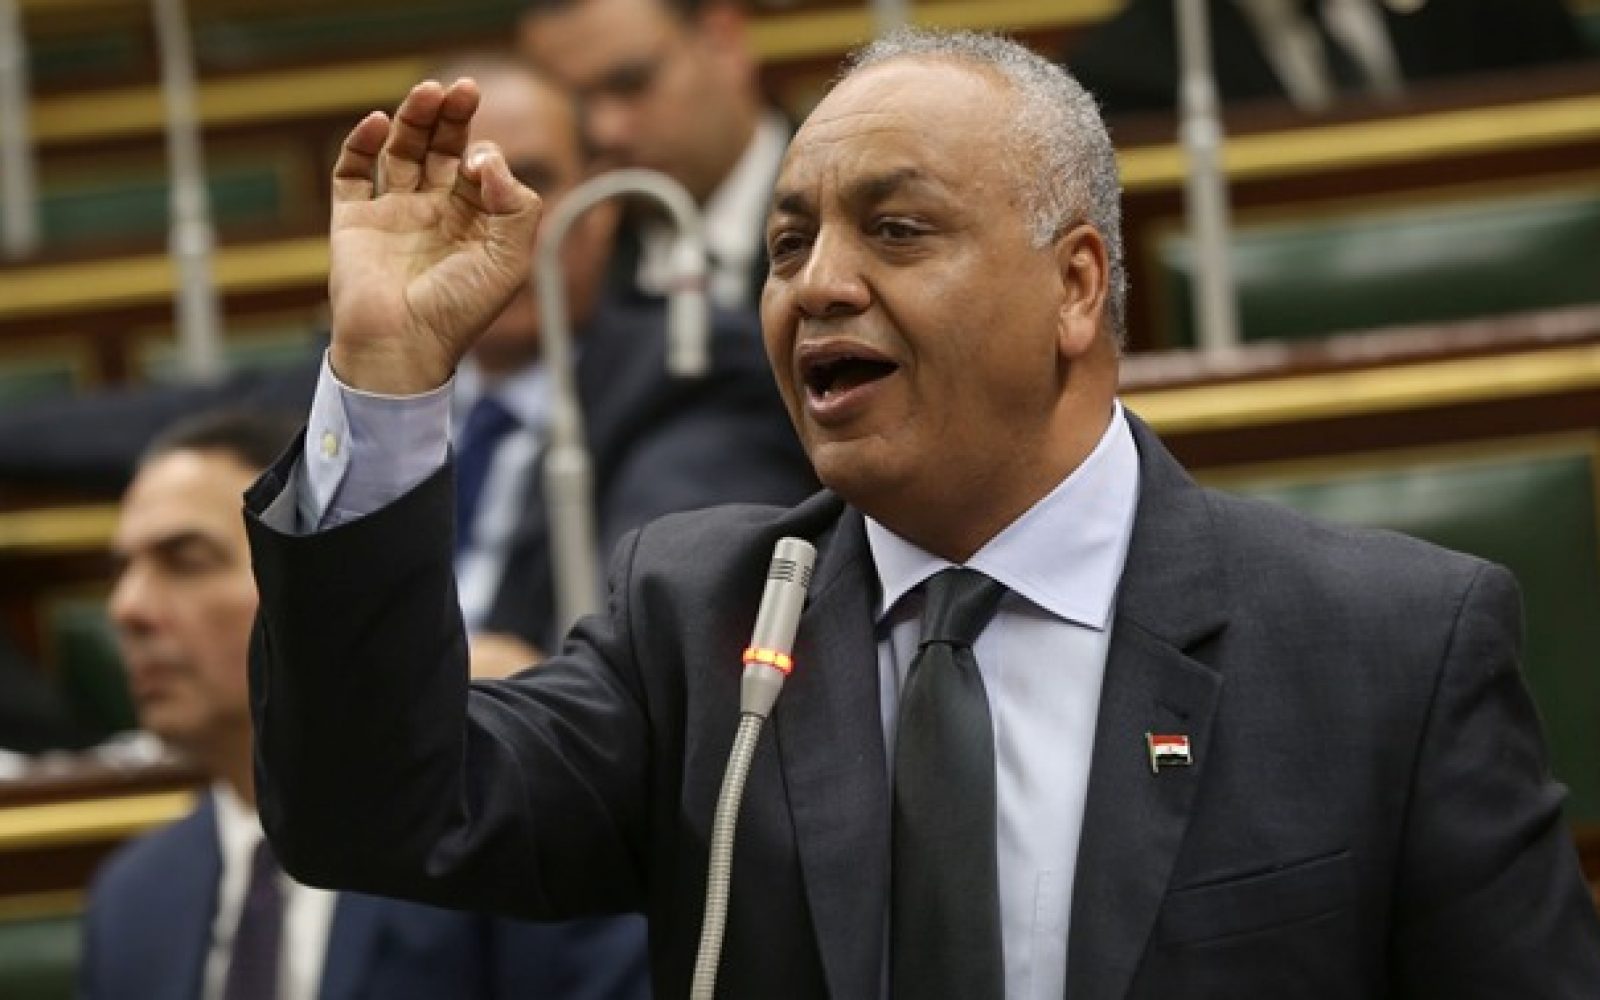   النائب مصطفى بكرى يقدم إستجوابًا جديدًا ضد وزير قطاع الأعمال العام